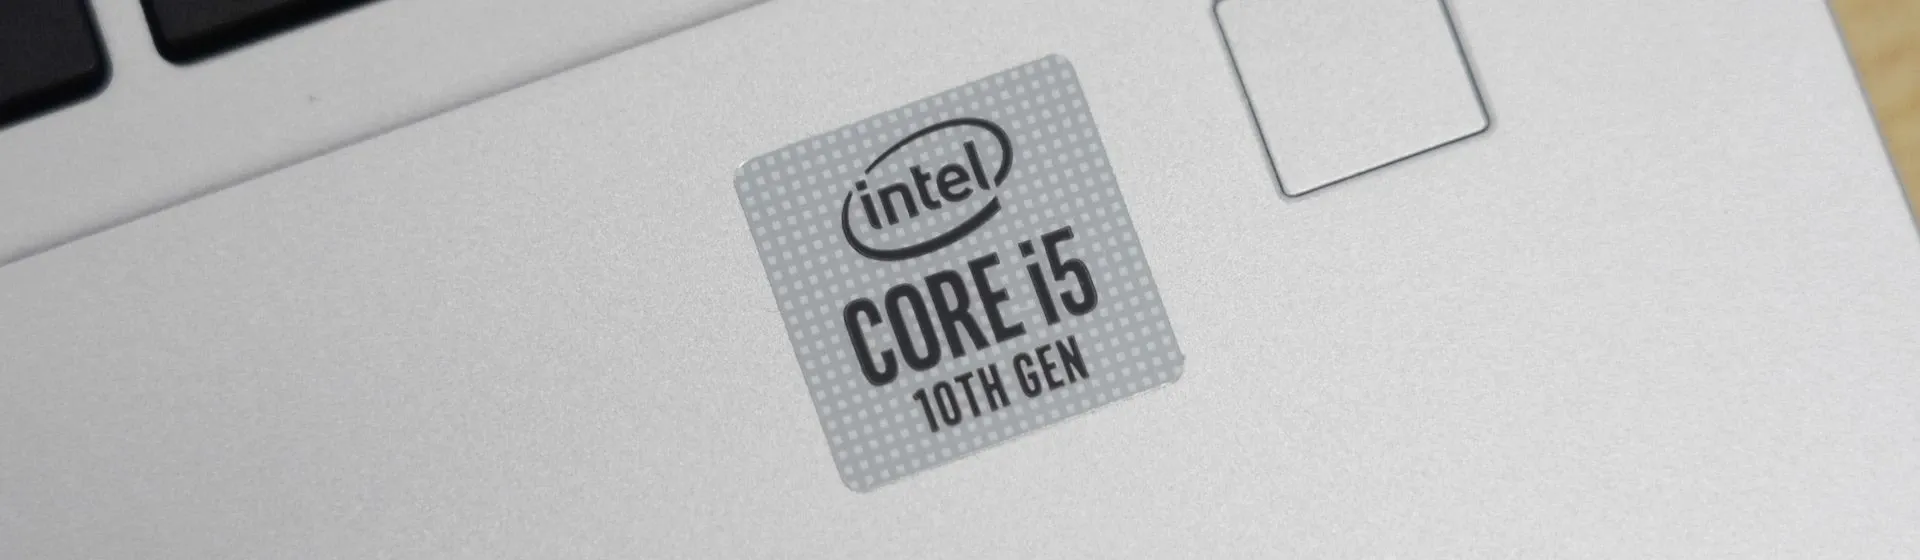 Processador i5 é bom? Entenda tudo sobre as CPUs intermediárias Intel